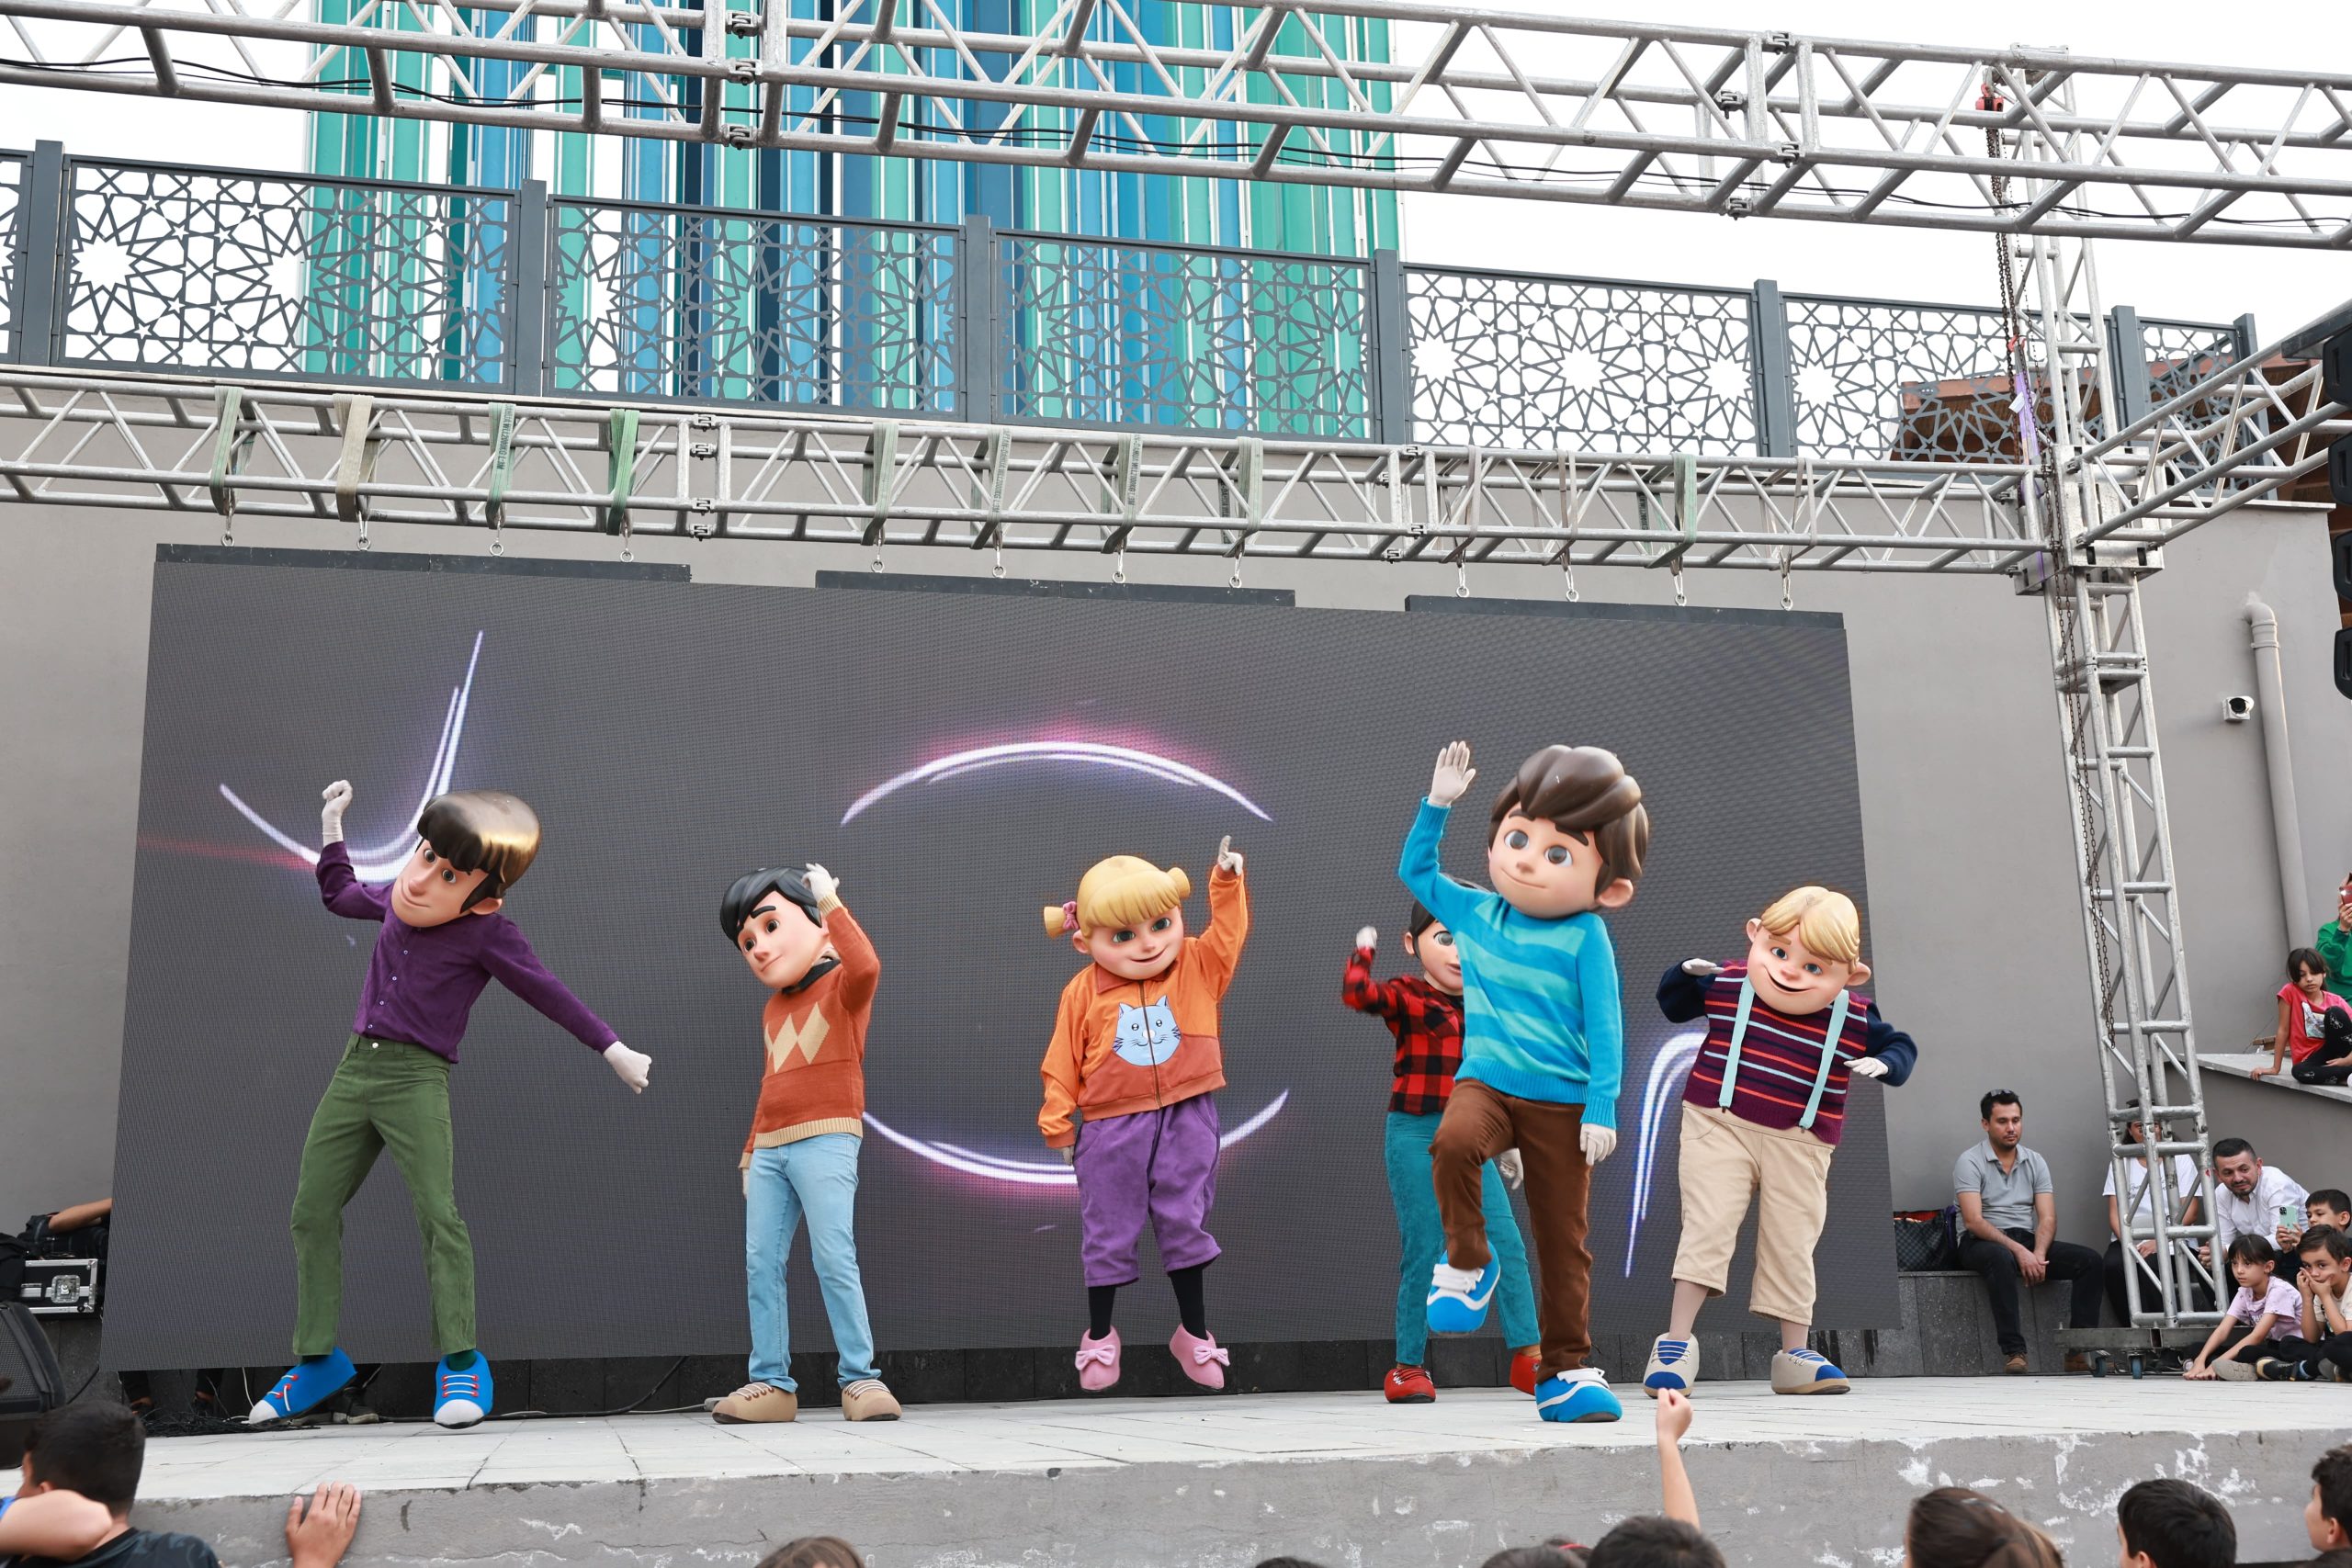 EXPO 2023’de Rafadan Tayfa rüzgarı esti, çocuklar 29 Ekim’i Grup Rafadan’la kutladı